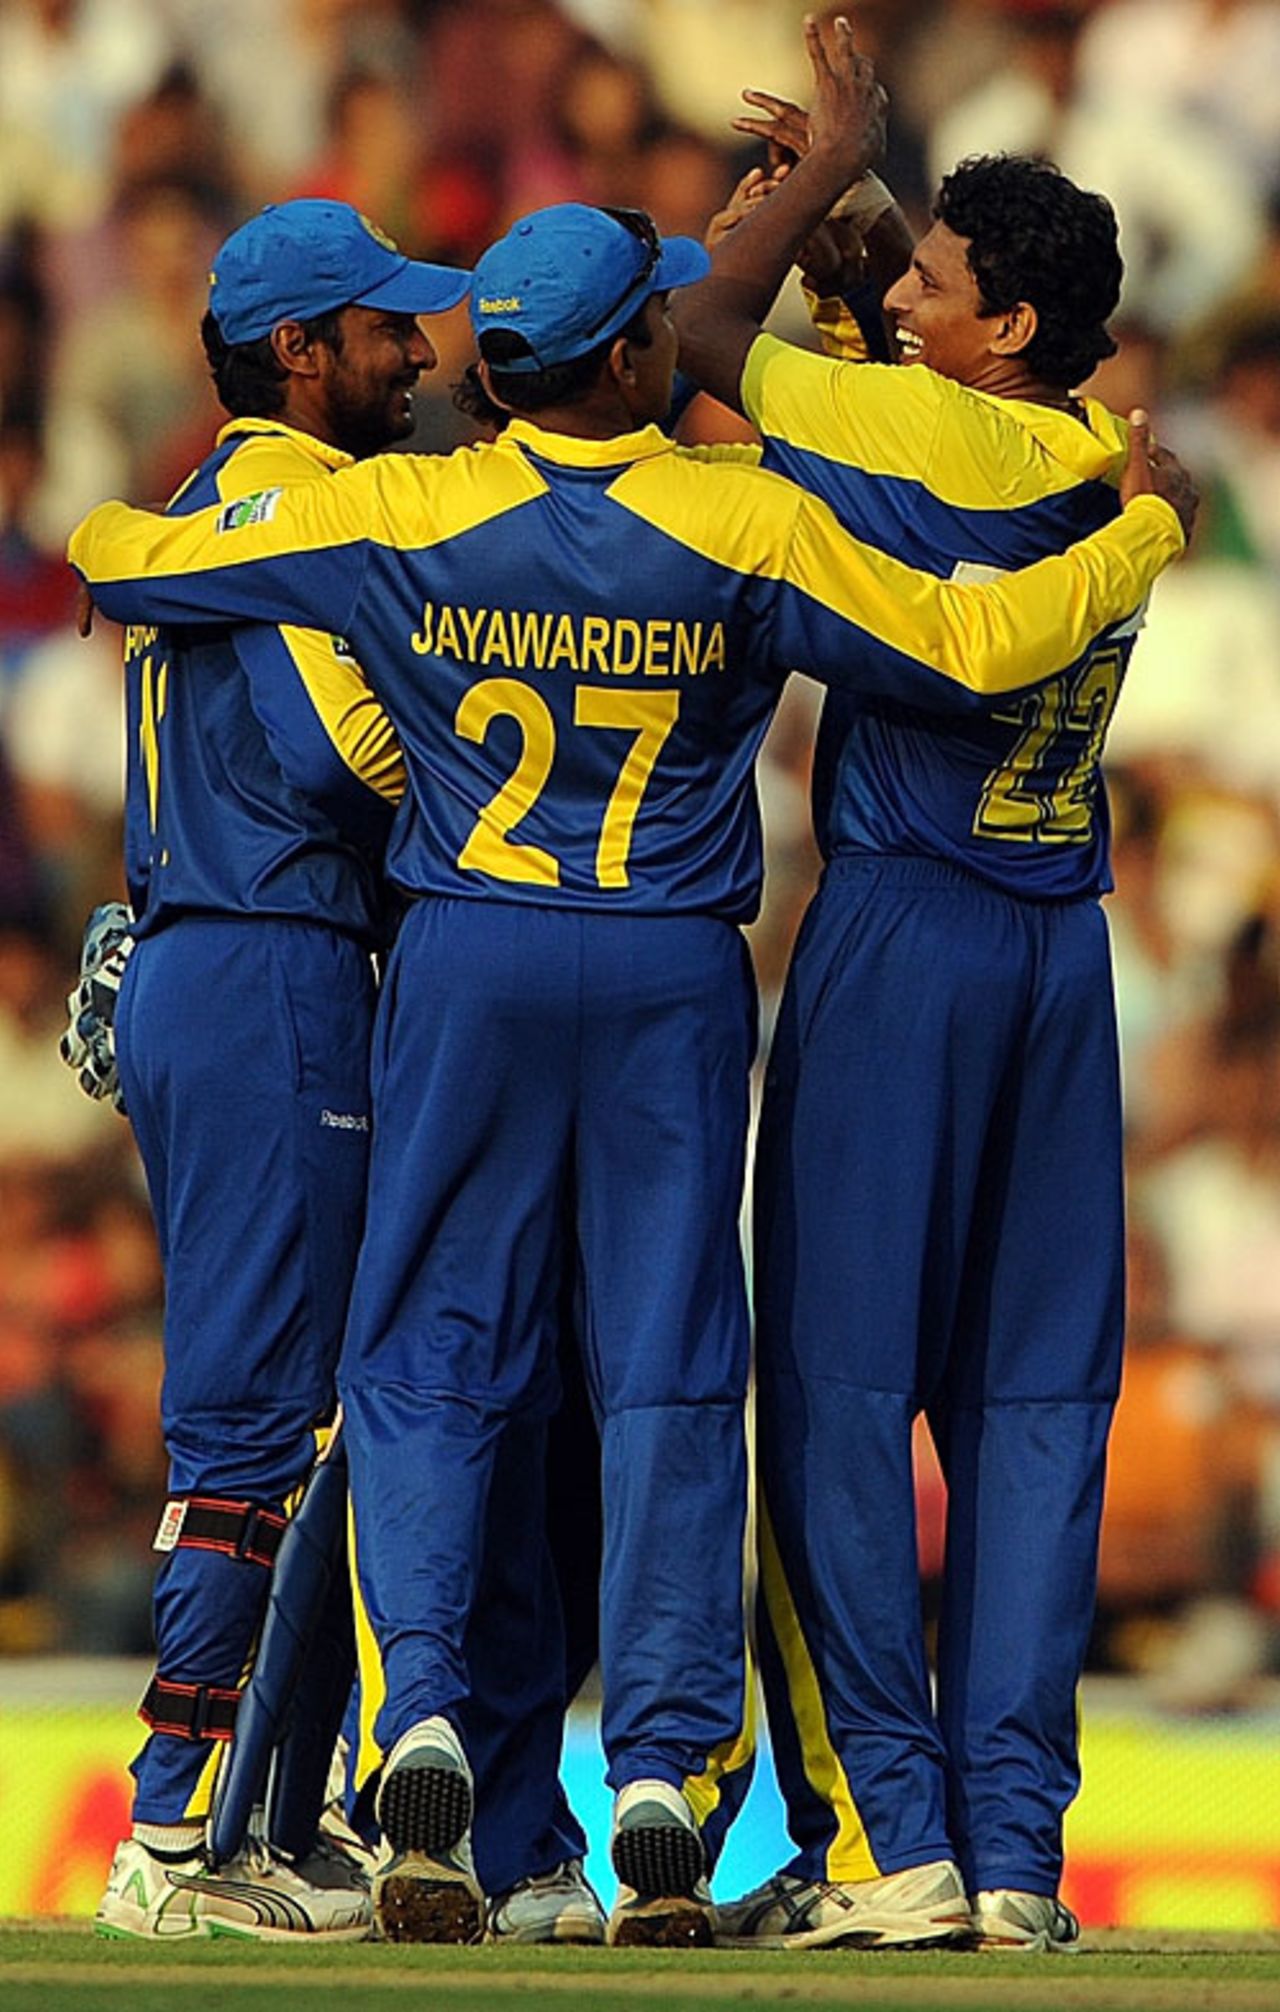 The Sri Lankan fielders celebrate Suraj Randiv's first ODI wicket, India v Sri Lanka, 2nd ODI, Nagpur, December 18, 2009